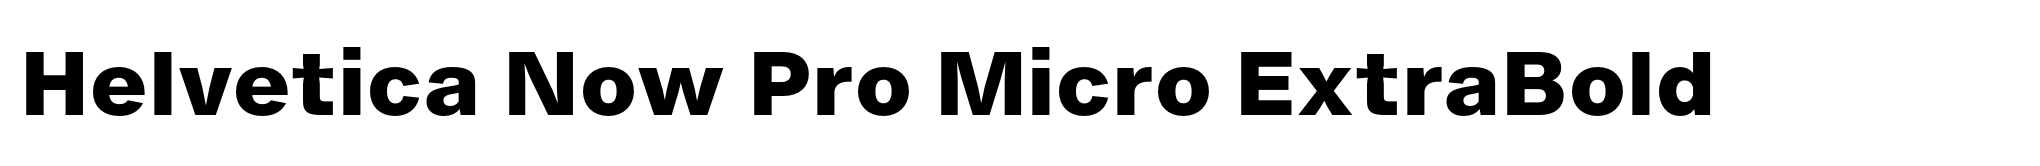 Helvetica Now Pro Micro ExtraBold image